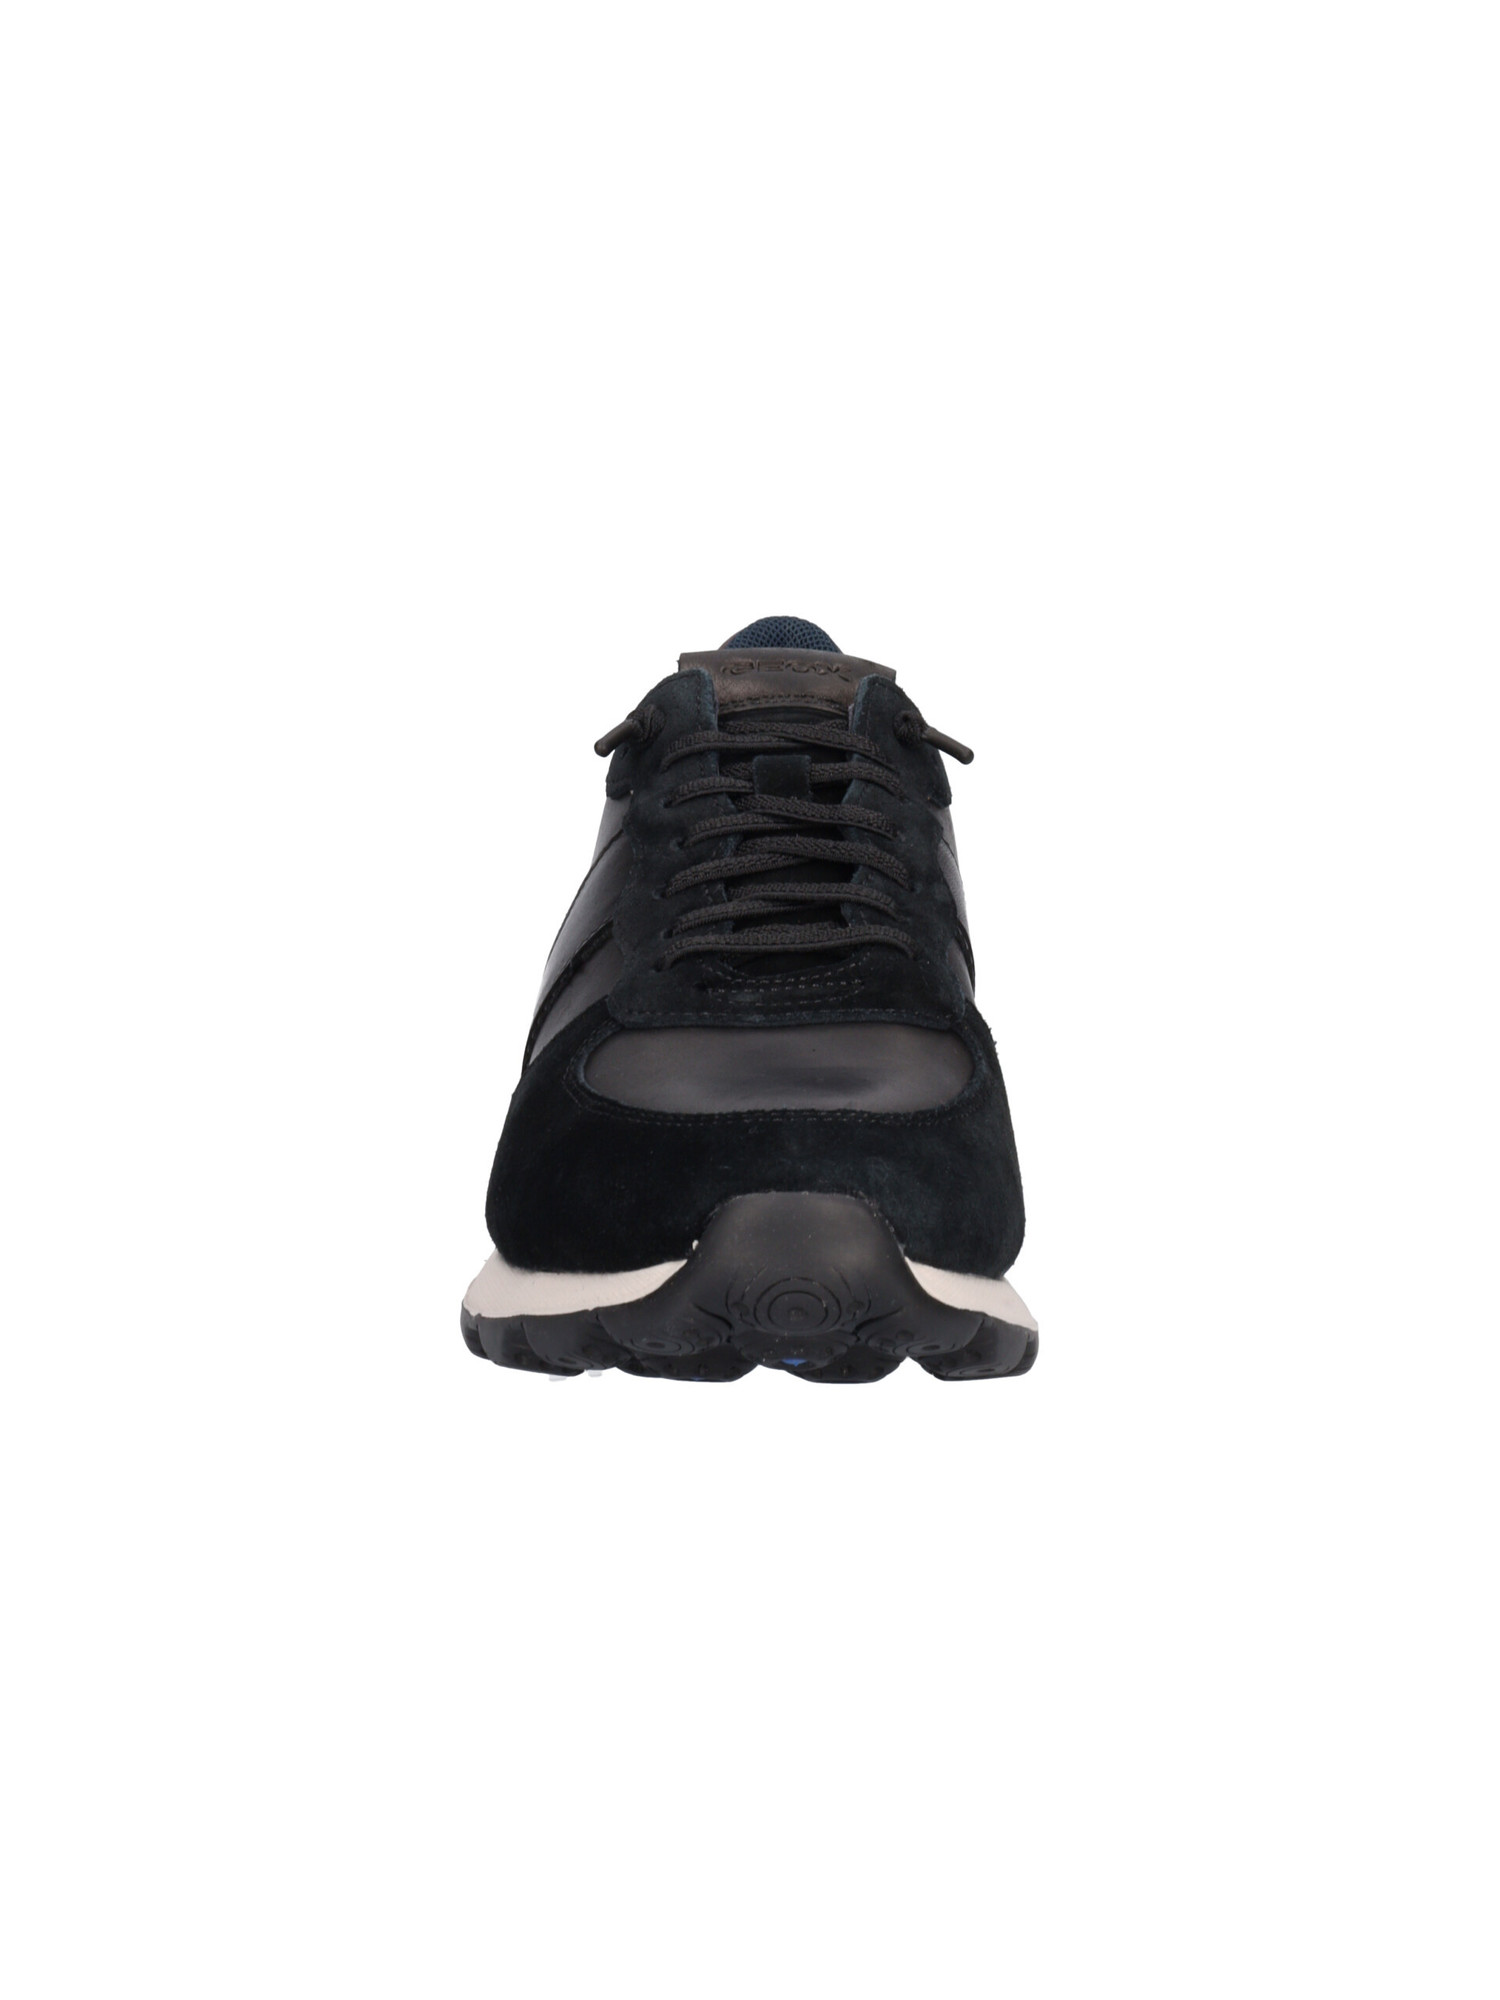 sneaker-geox-spherica-da-uomo-nera-fcb04a